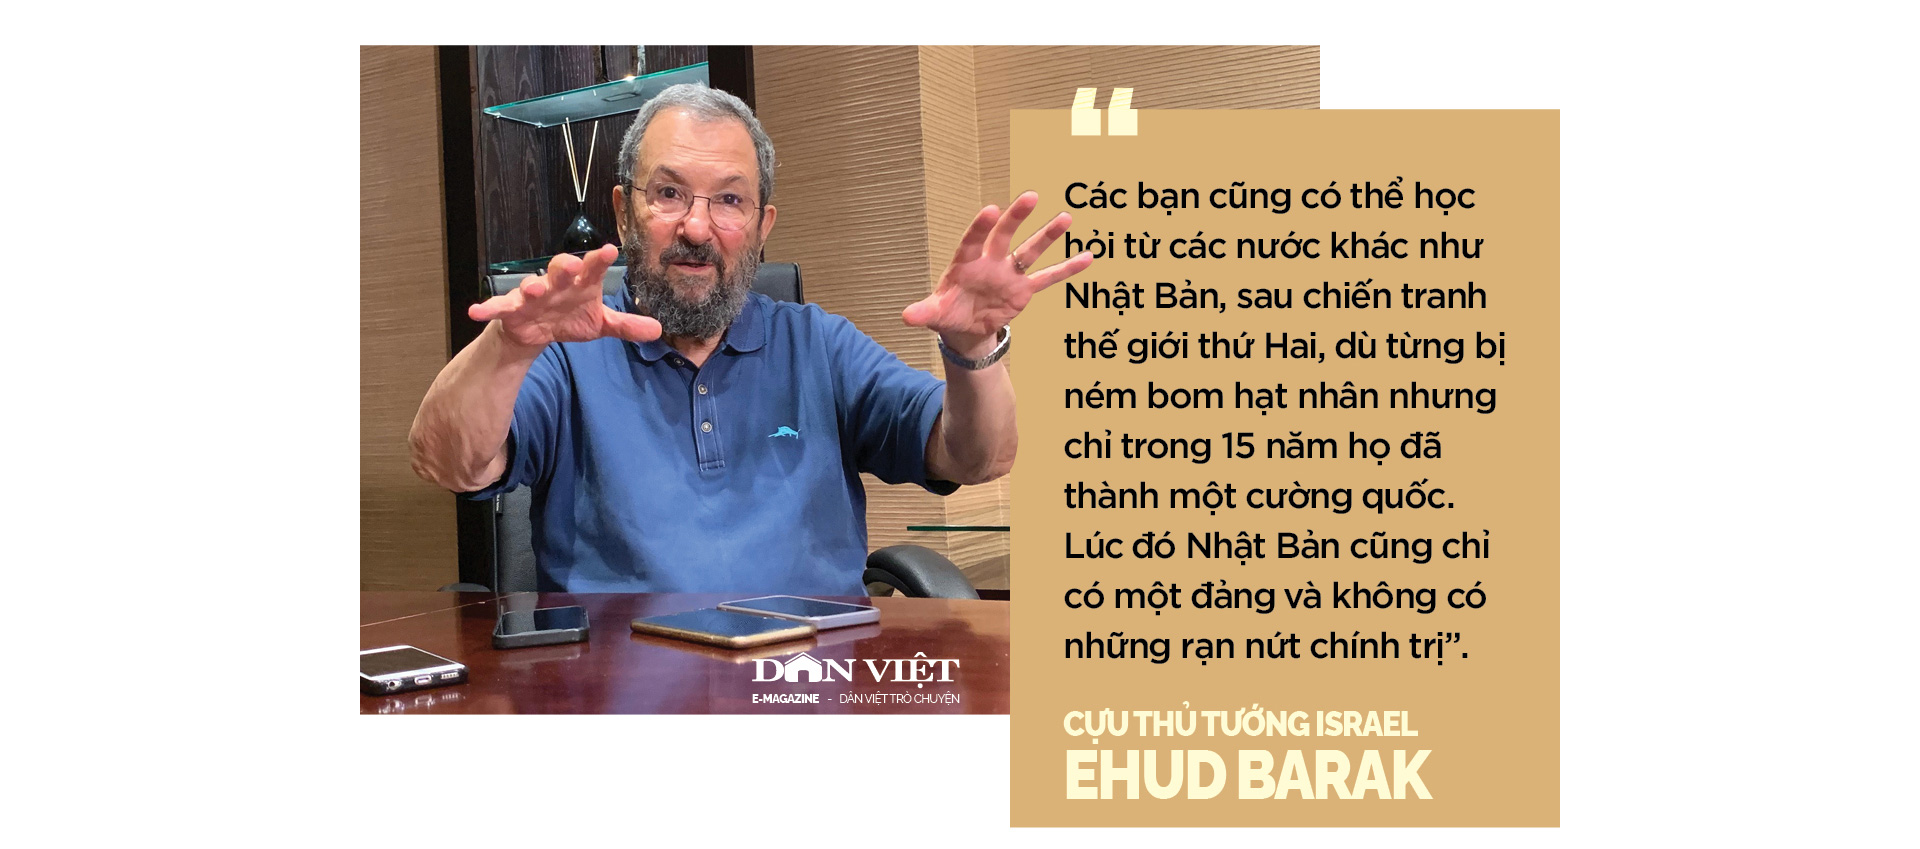 Cựu Thủ tướng Israel Ehud Barak: Với Việt Nam, giới hạn là bầu trời - Ảnh 2.